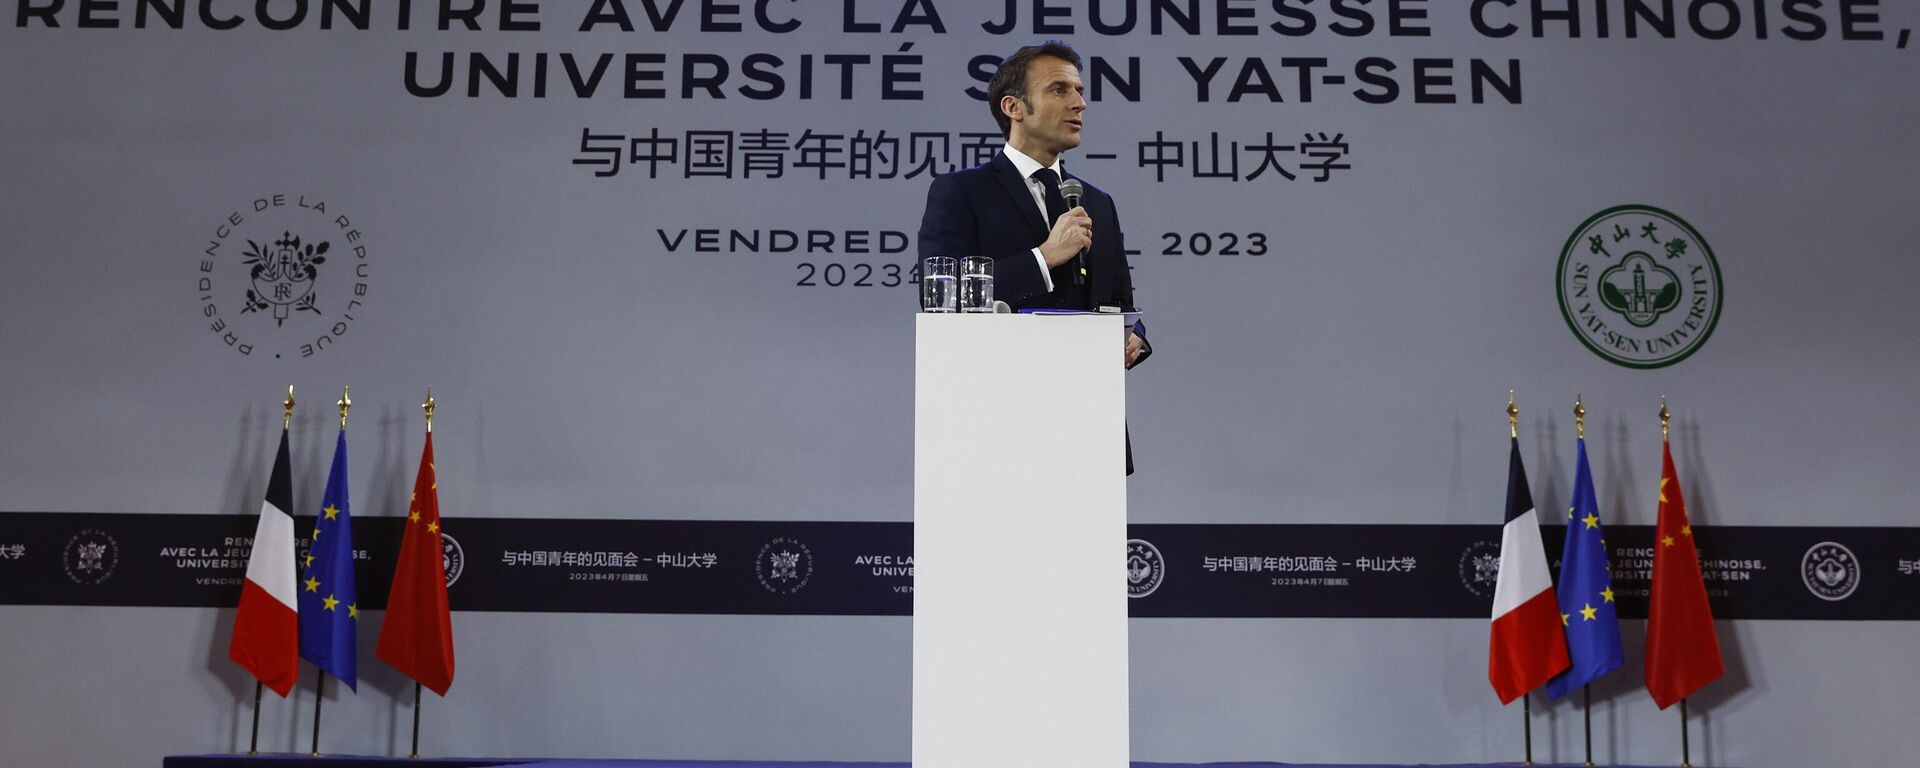 Emmanuel Macron, presidente da França, discursa na Universidade Sun Yat-sem em Guangzhou, China, 7 de abril de 2023 - Sputnik Brasil, 1920, 07.04.2023